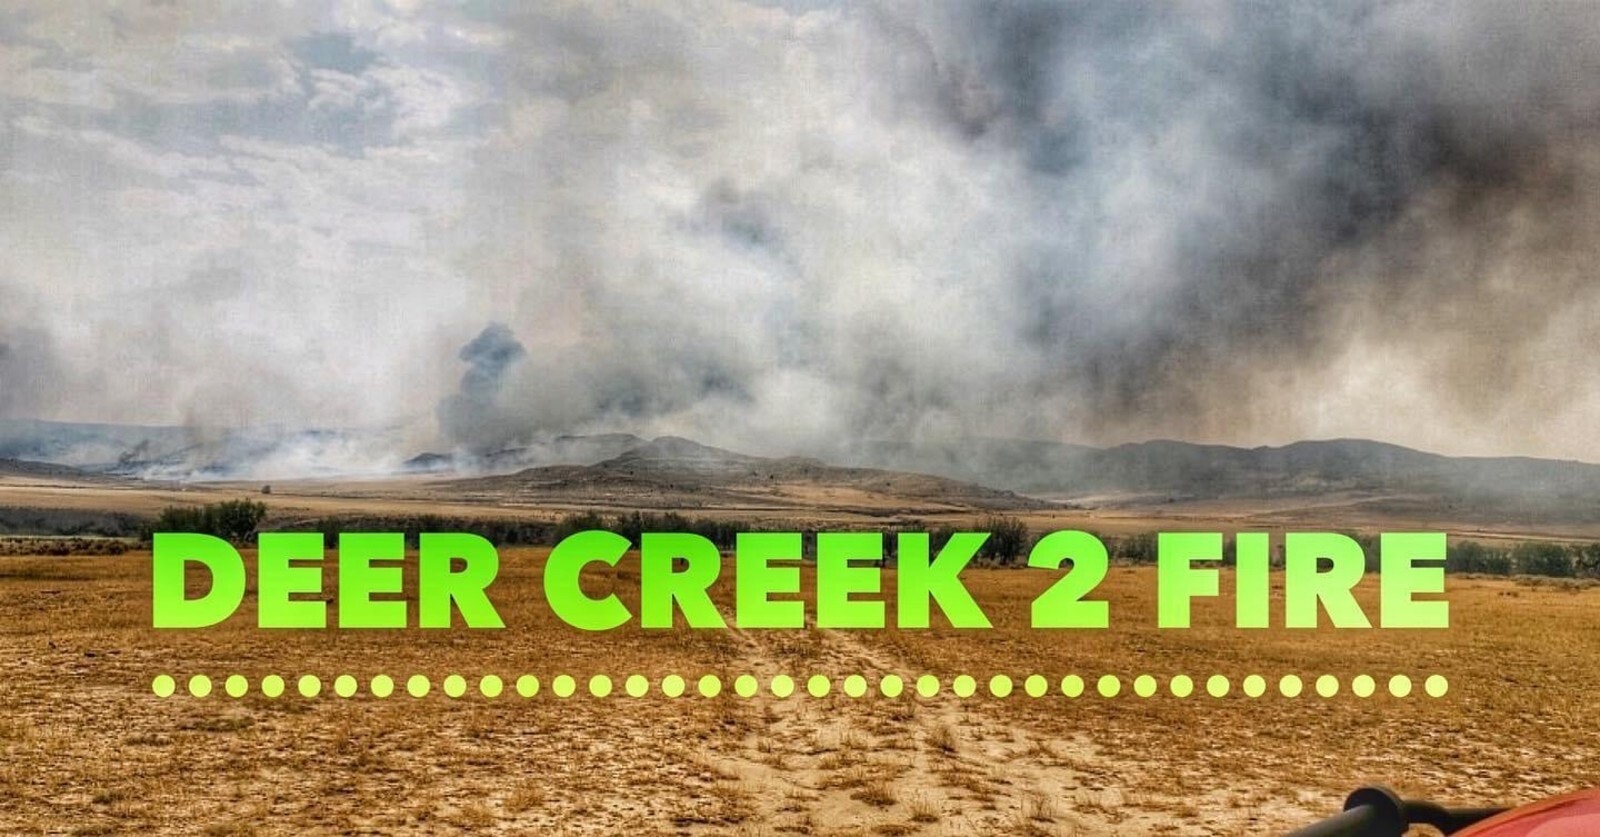 Deer creek 2 fire